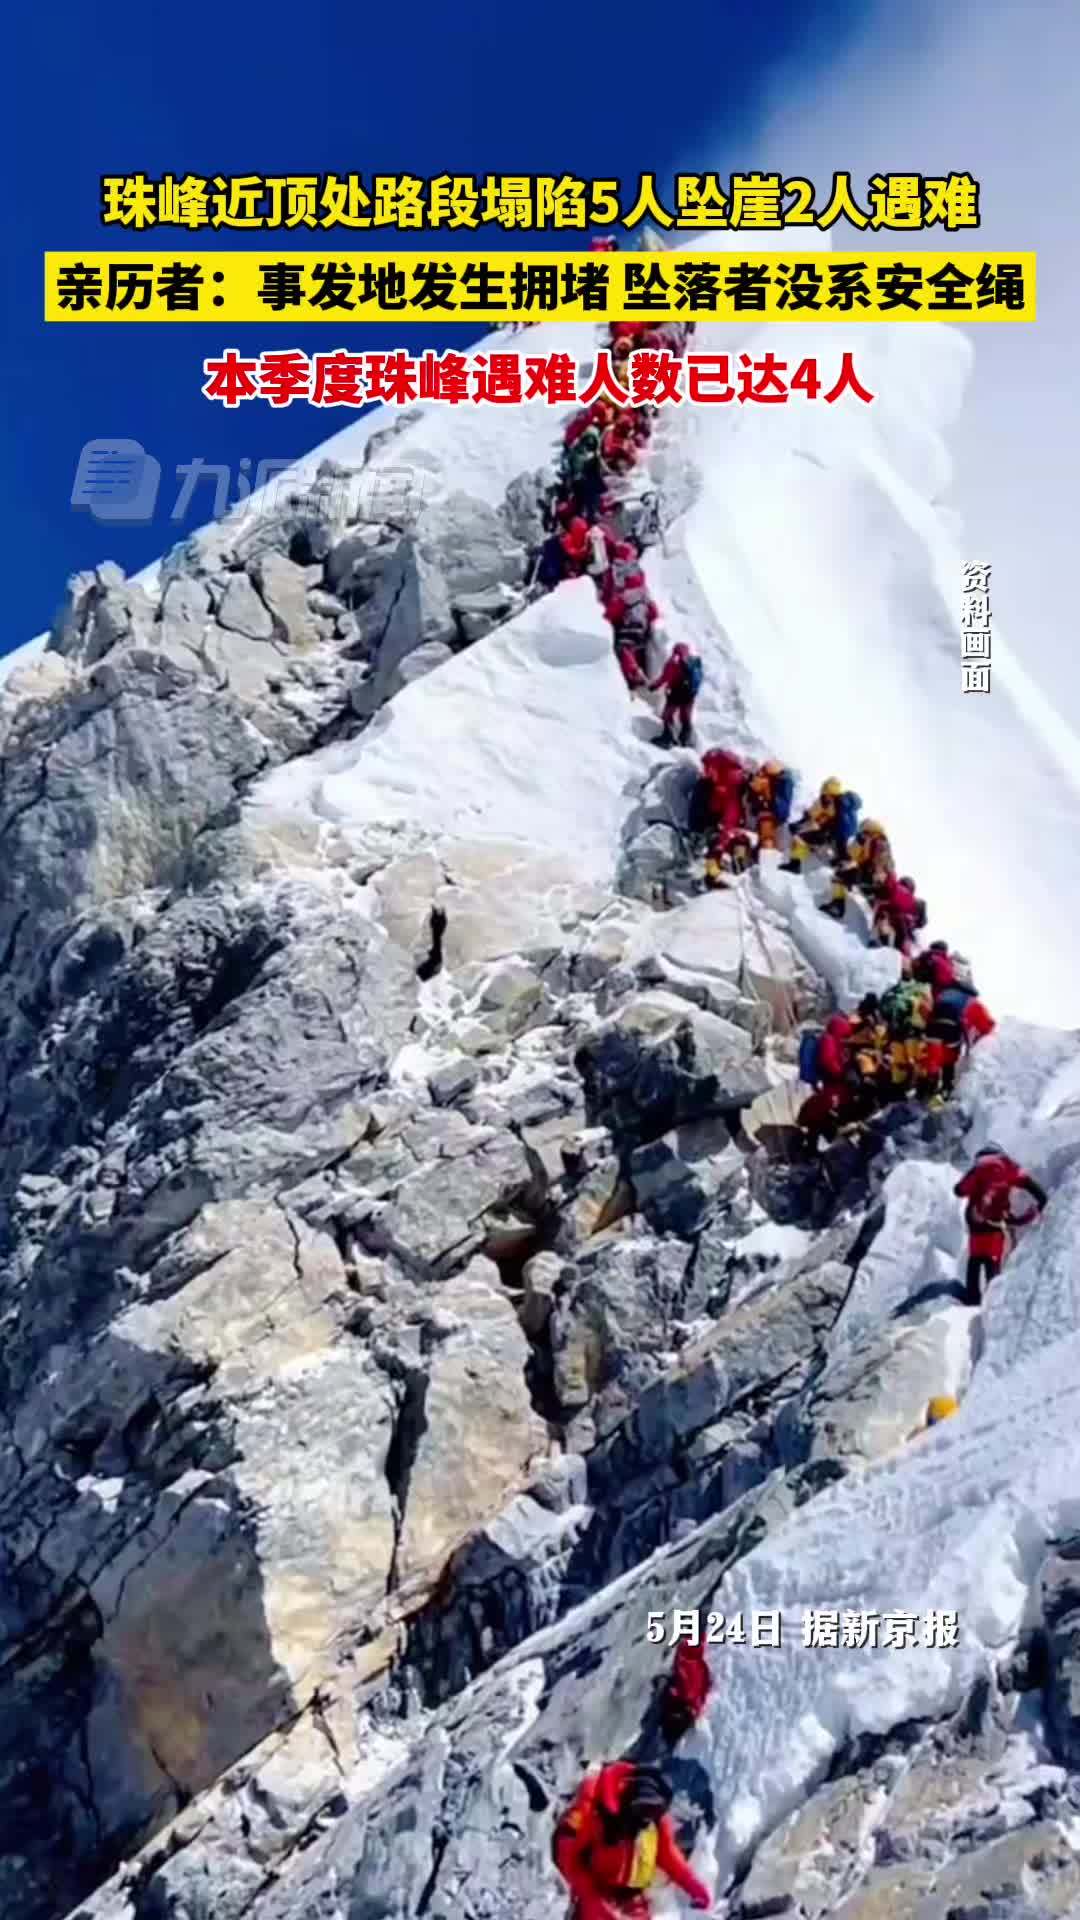 亲历者讲述珠峰近顶处路段塌陷2人遇难 ：事发地发生拥堵，坠落者没系安全绳